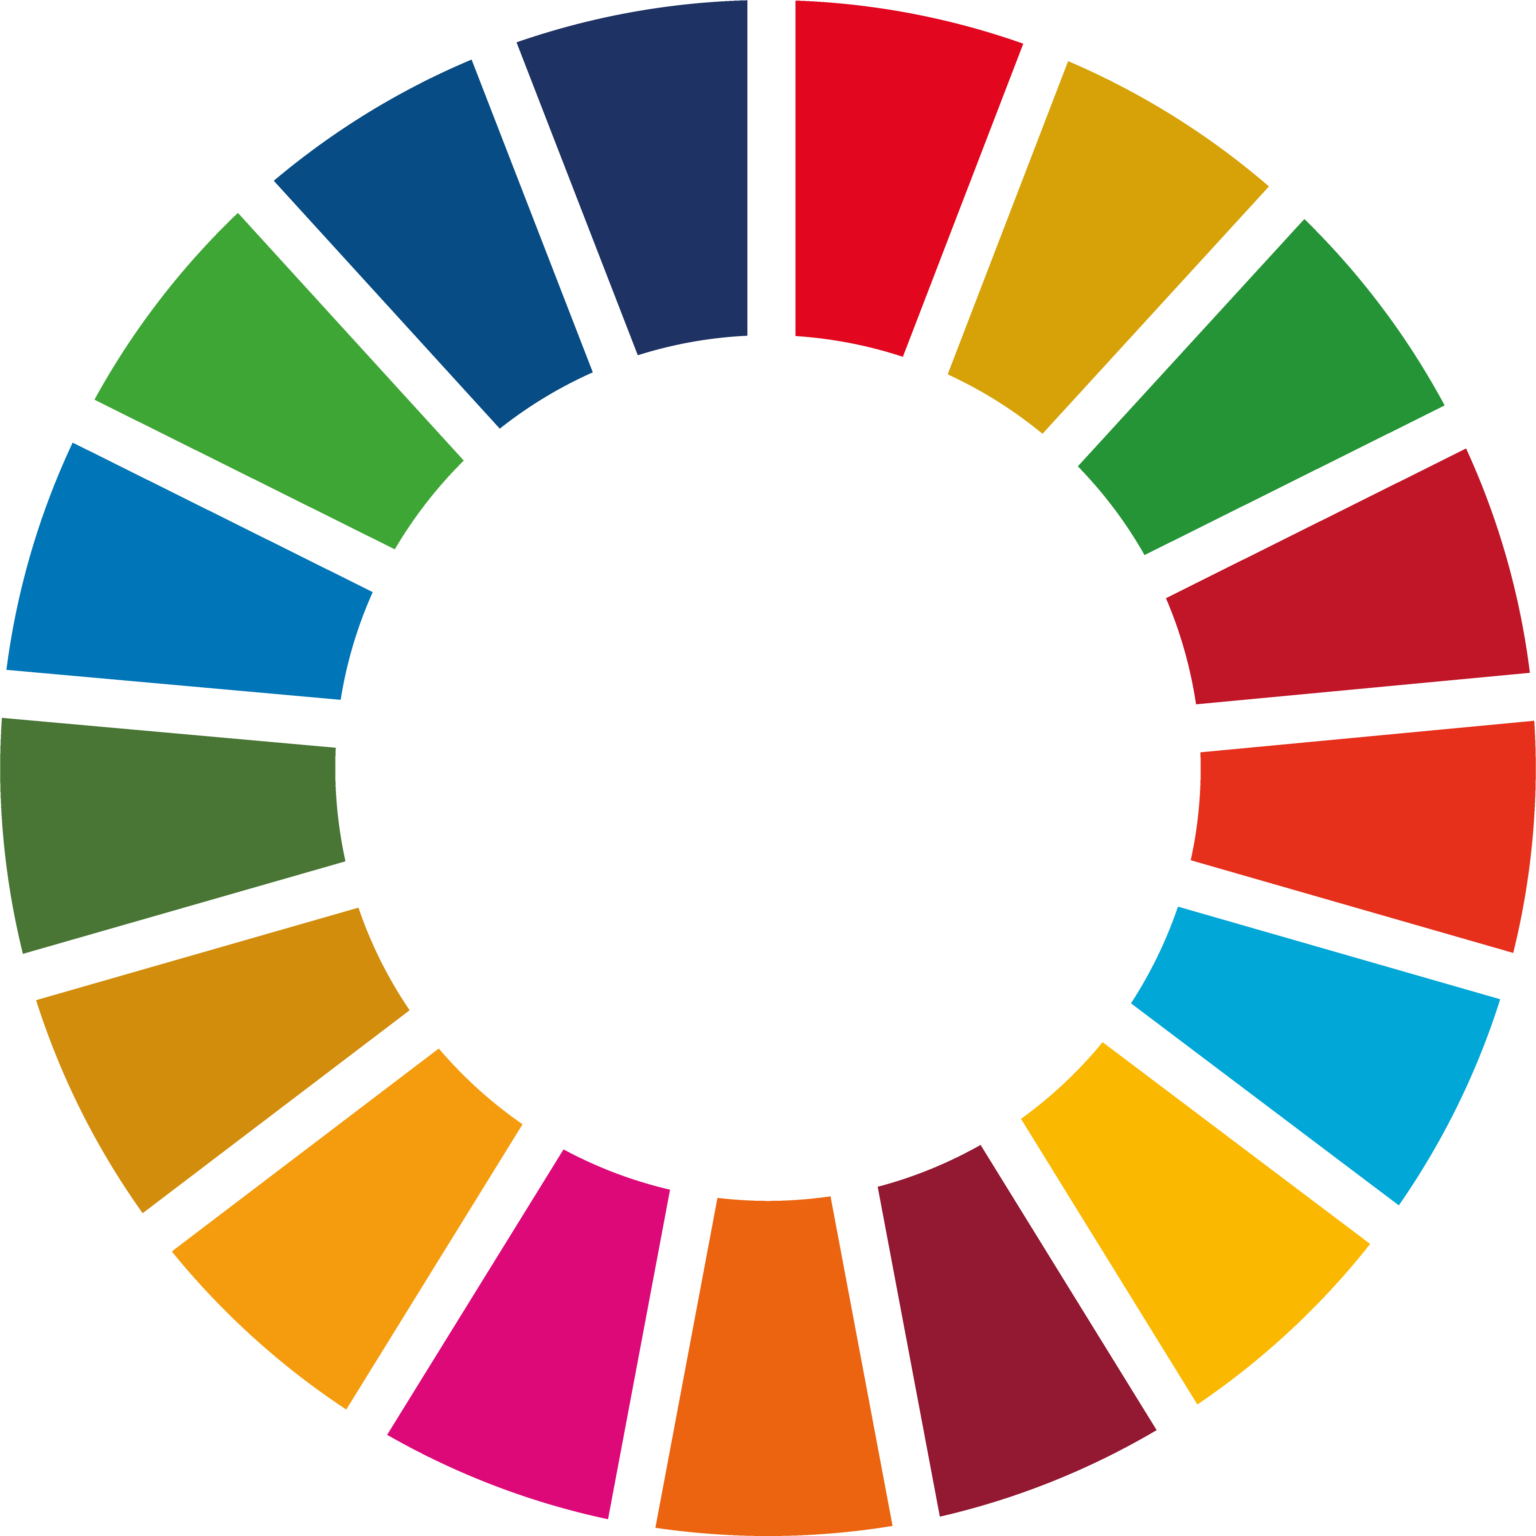 Ein Kreis aus 17 verschiedenfarbigen Teilen, die für die 17 Nachhaltigkeitsziele der UN stehen.